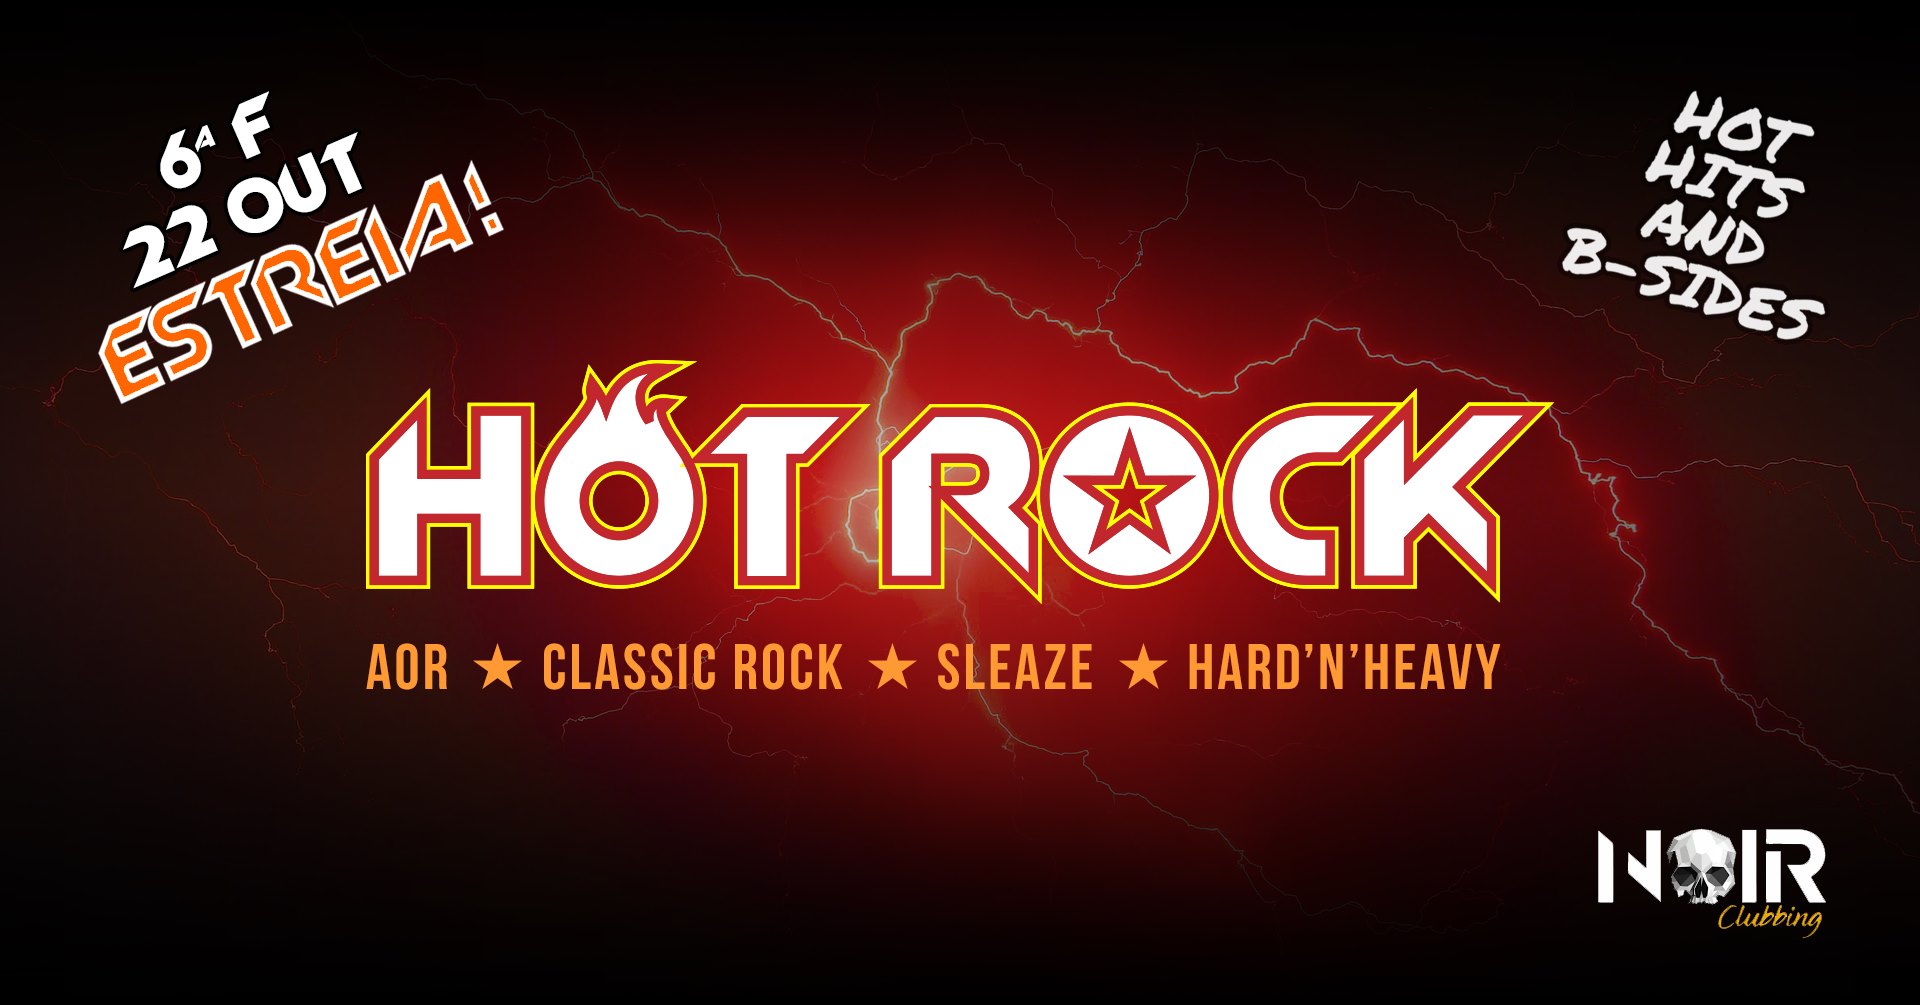 Hot Rock - Rock & Roll Crazy Nites